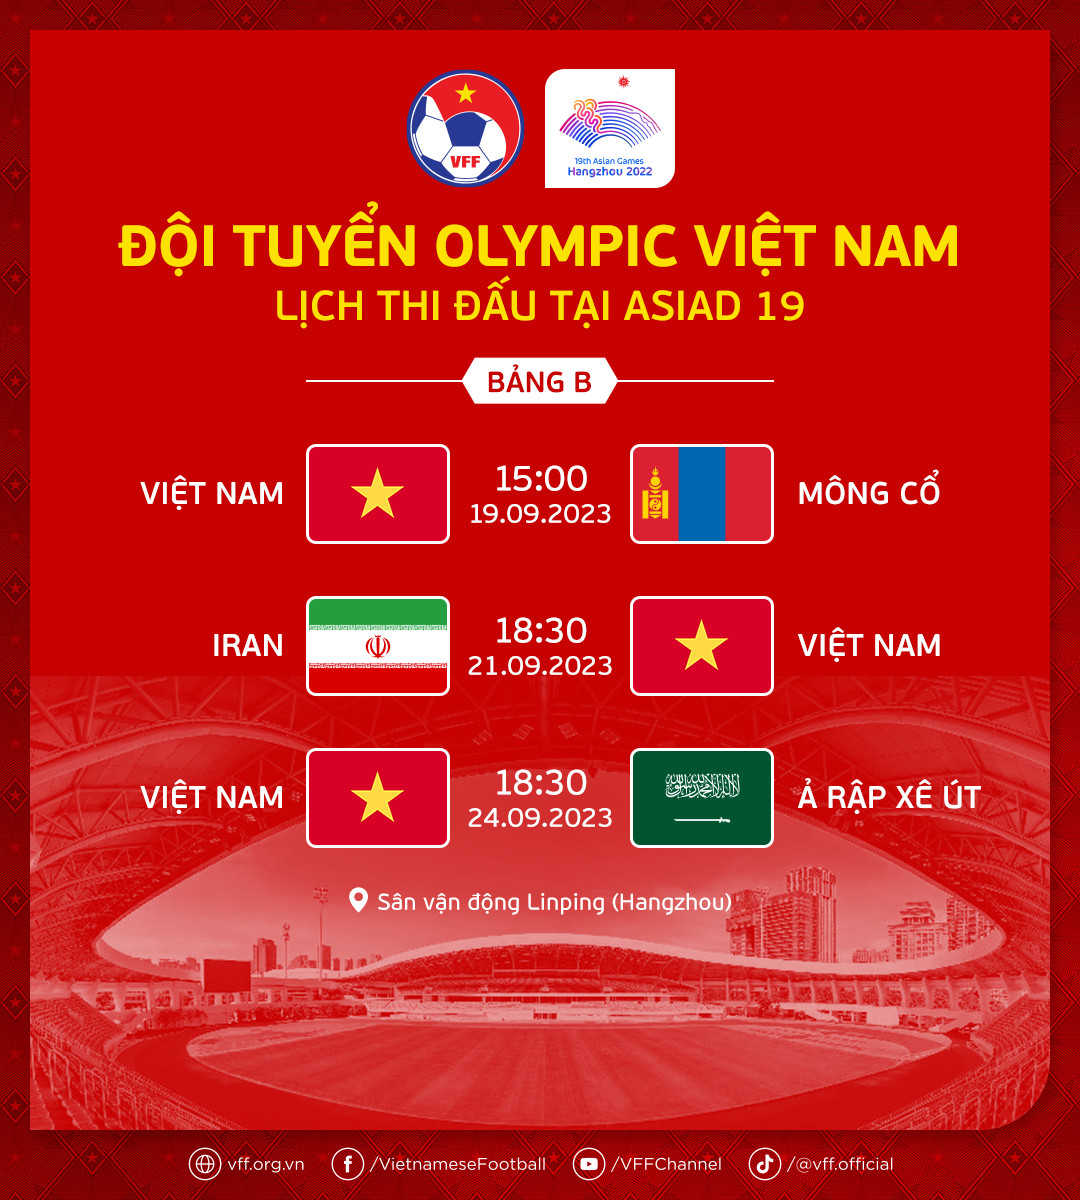 Lịch thi đấu bóng đá nam của Olympic Việt Nam tại ASIAD 19 - Ảnh 1